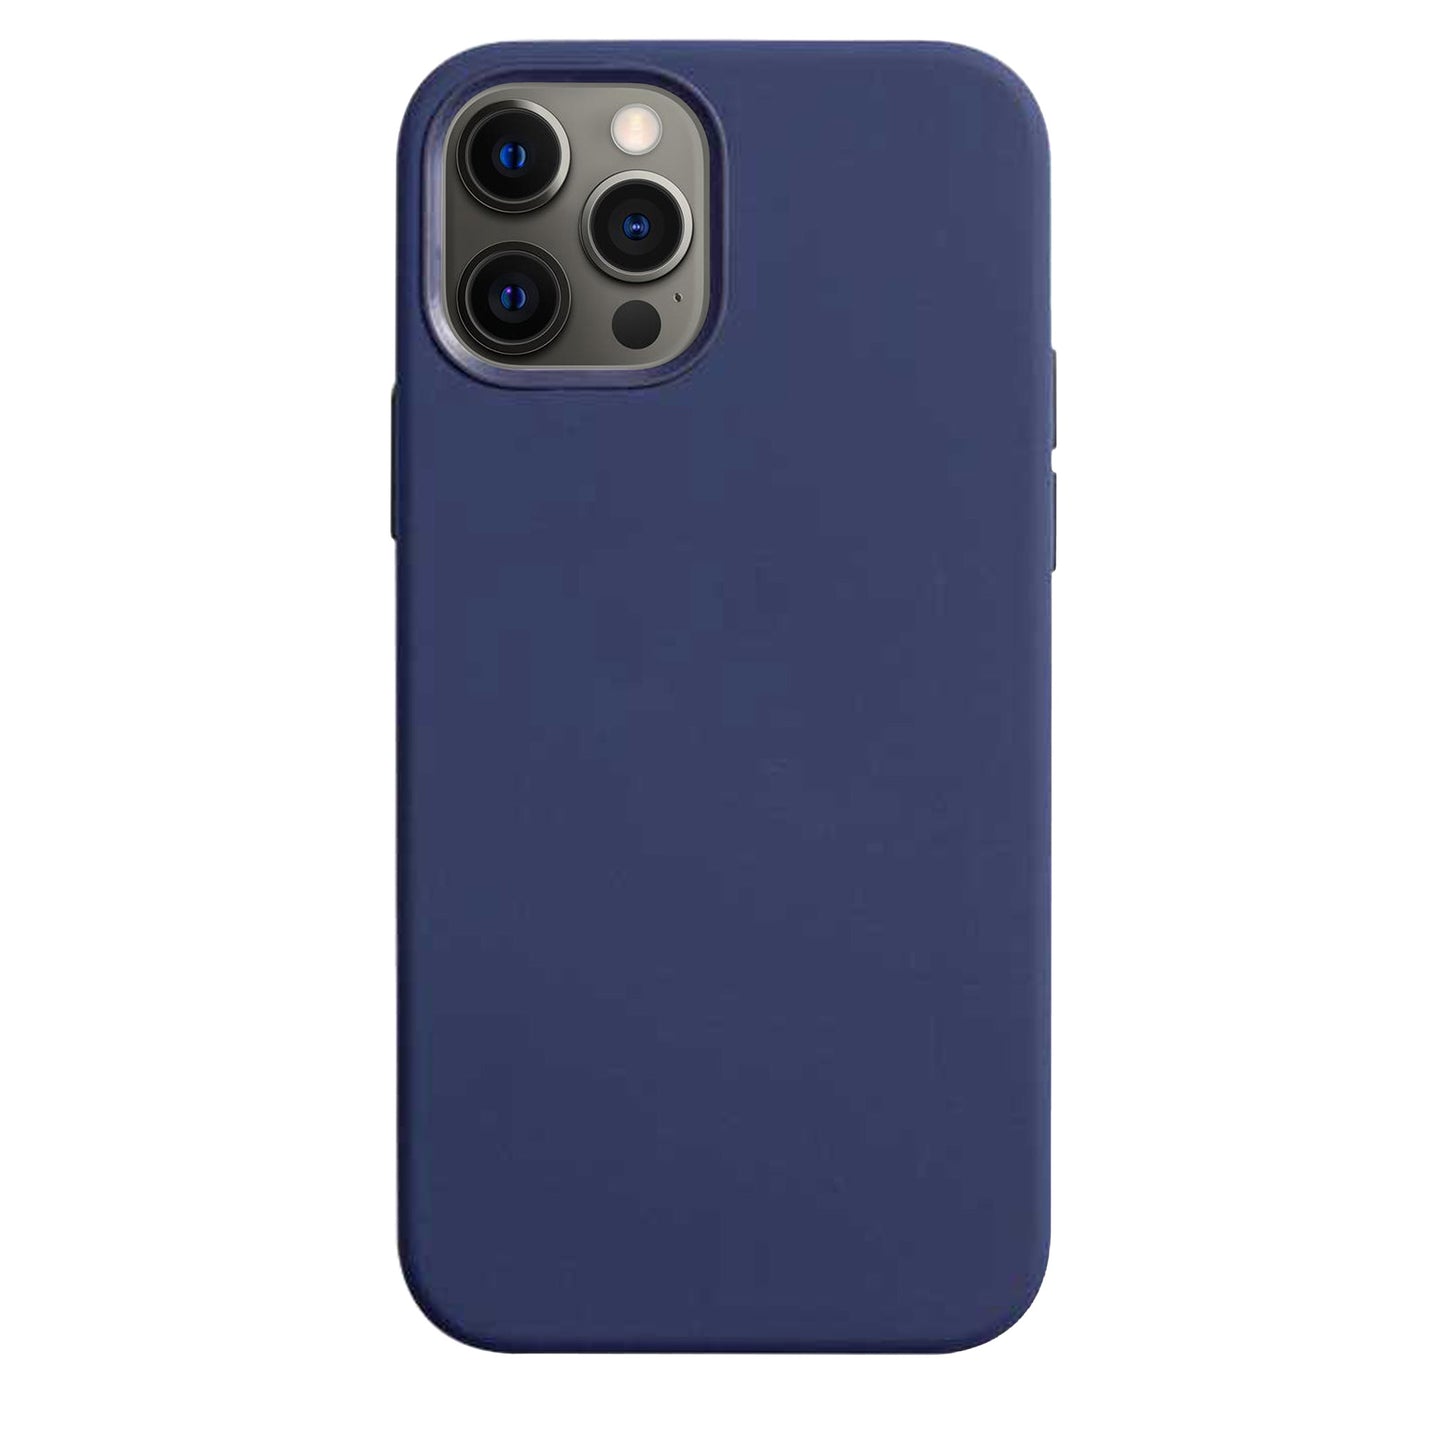 Coque en silicone bleu marine pour iPhone